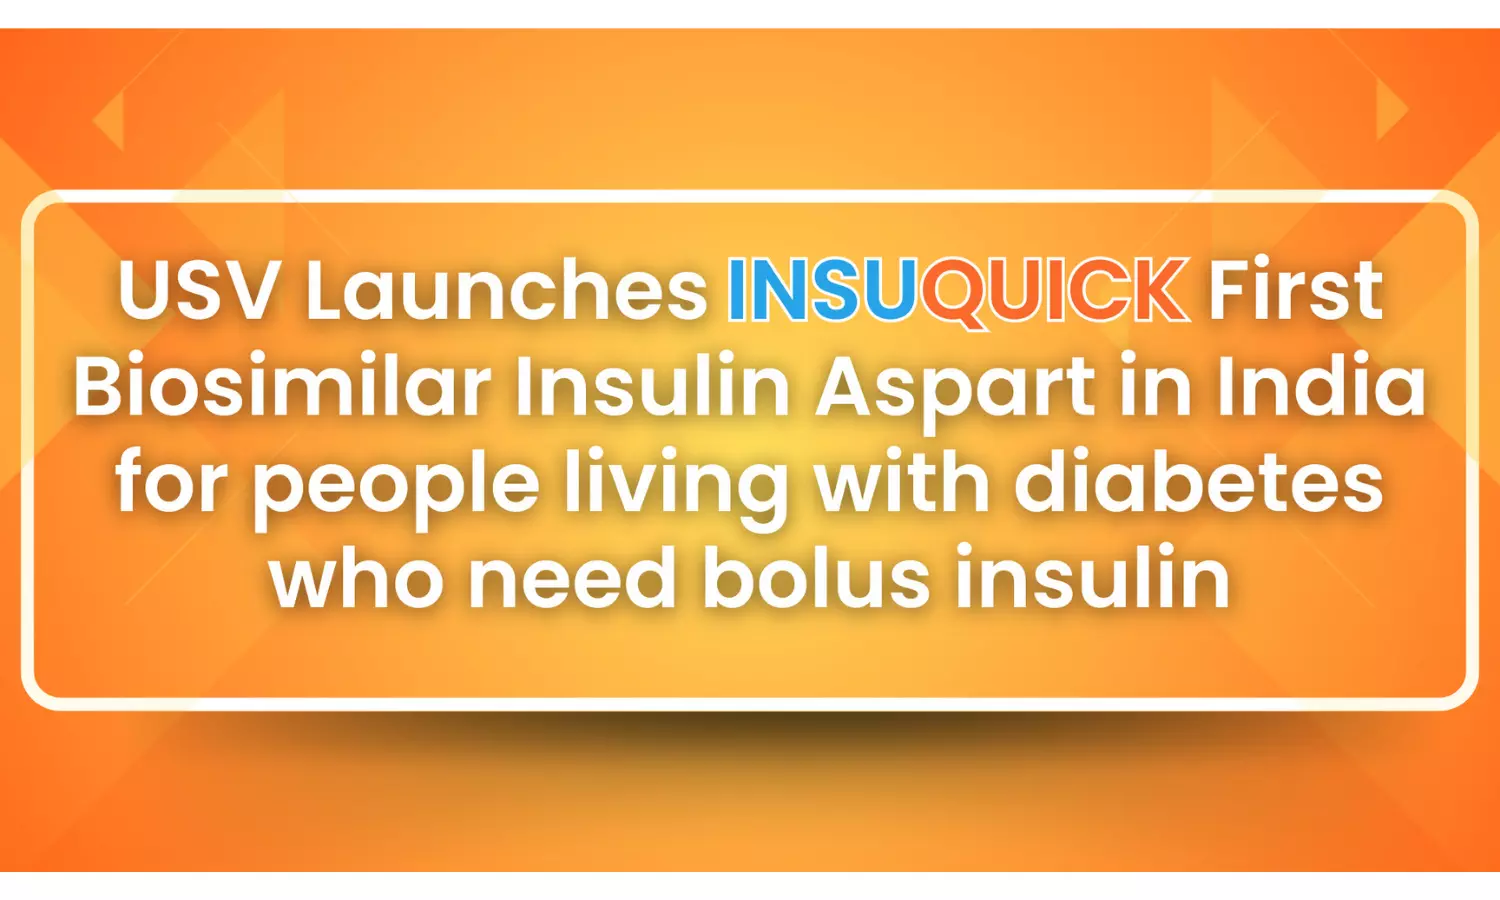 USV Launches INSUQUICK, First Biosimilar Insulin Aspart in India